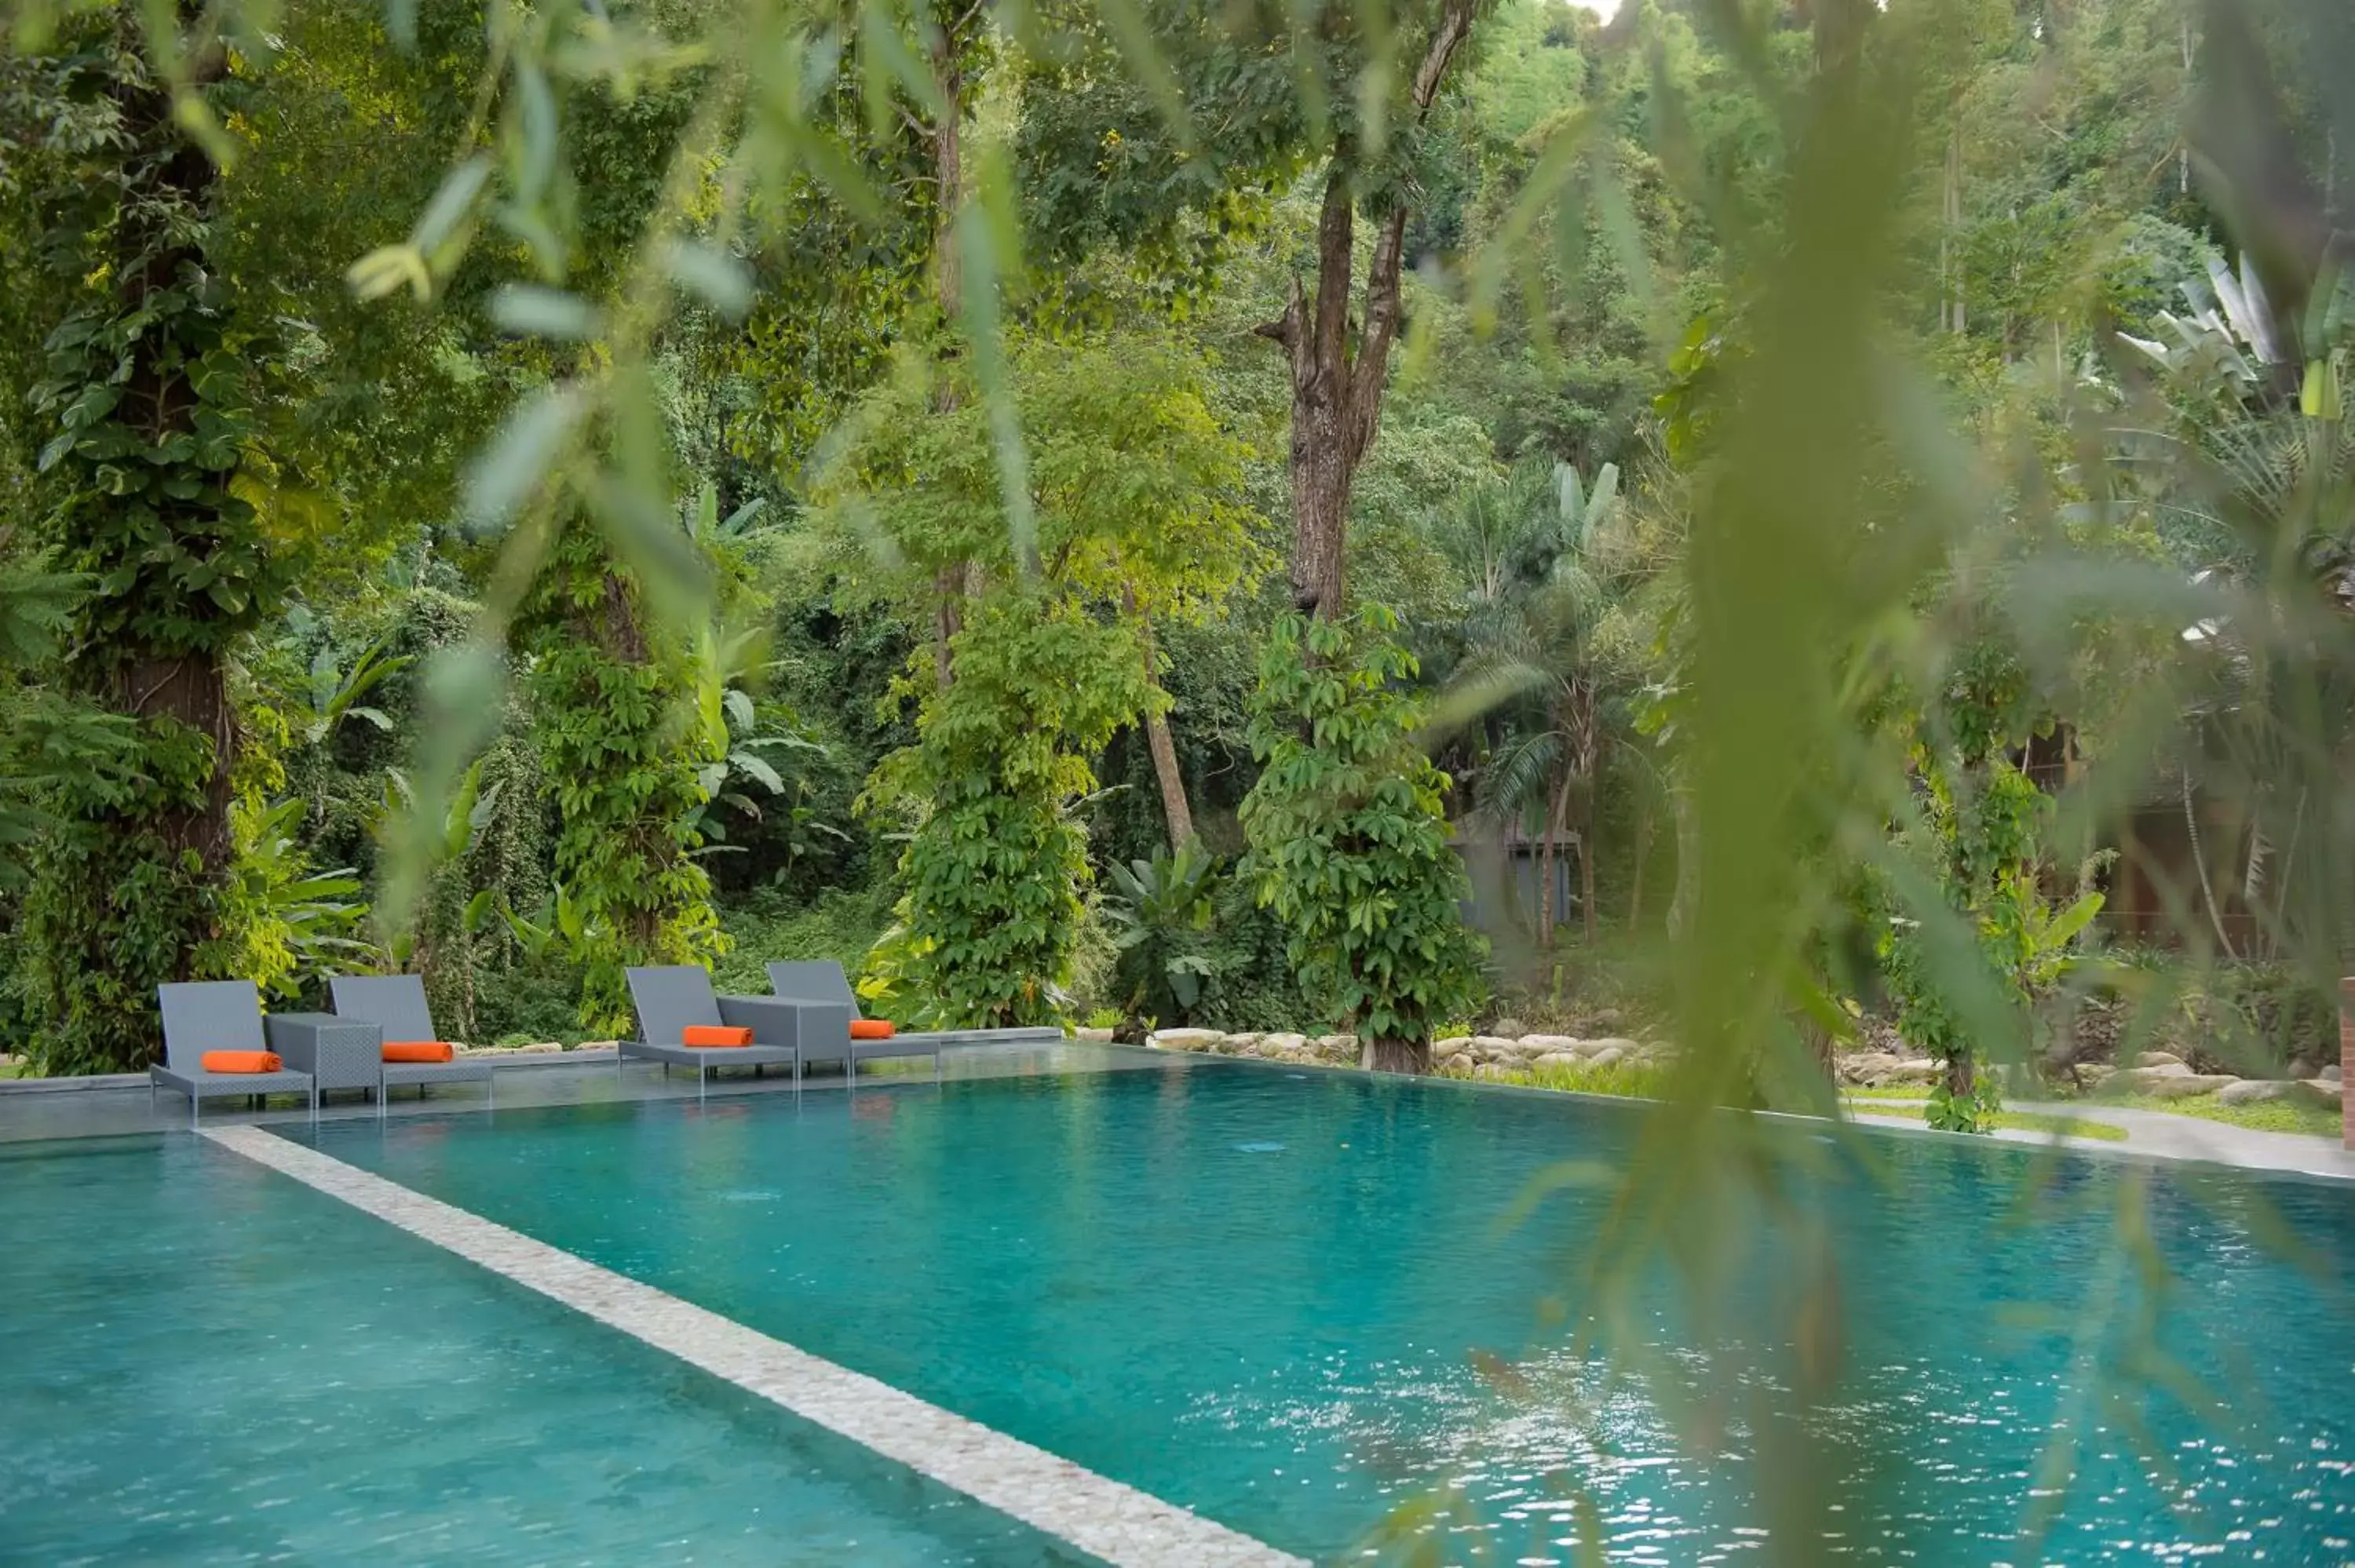 Swimming Pool in Flora Creek Chiang Mai